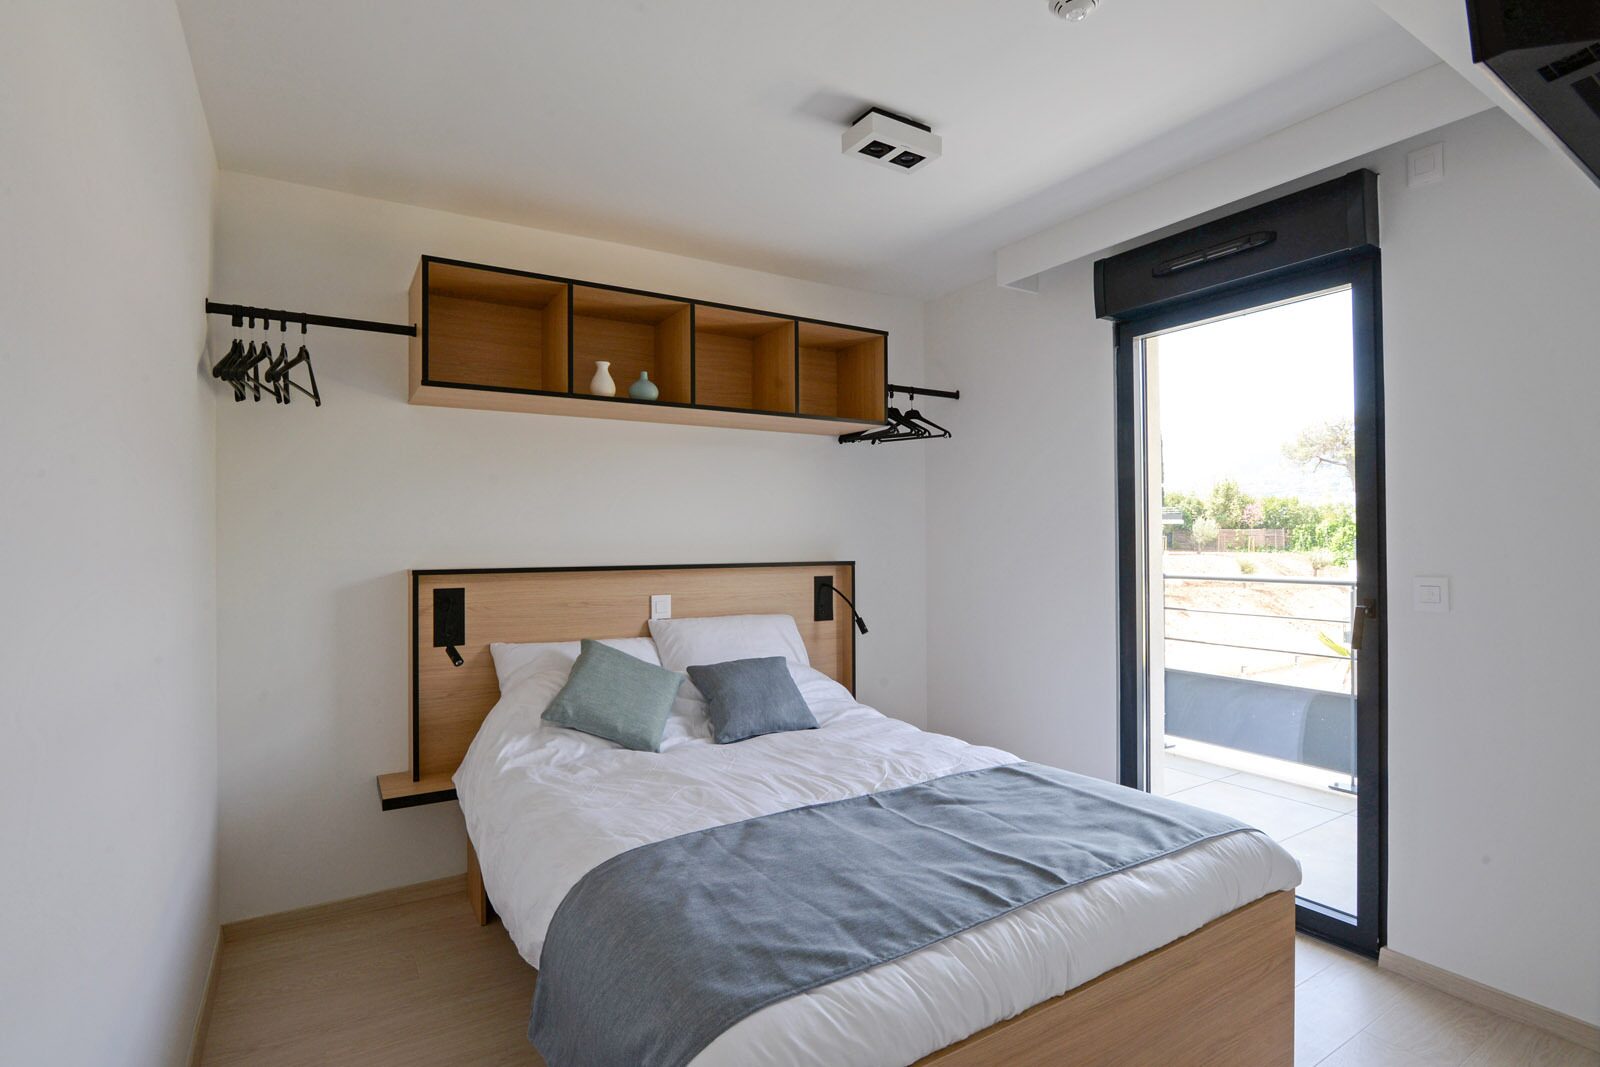 Appartement standard pour 6 personnes avec lit double, lits simples et un canapé-lit.